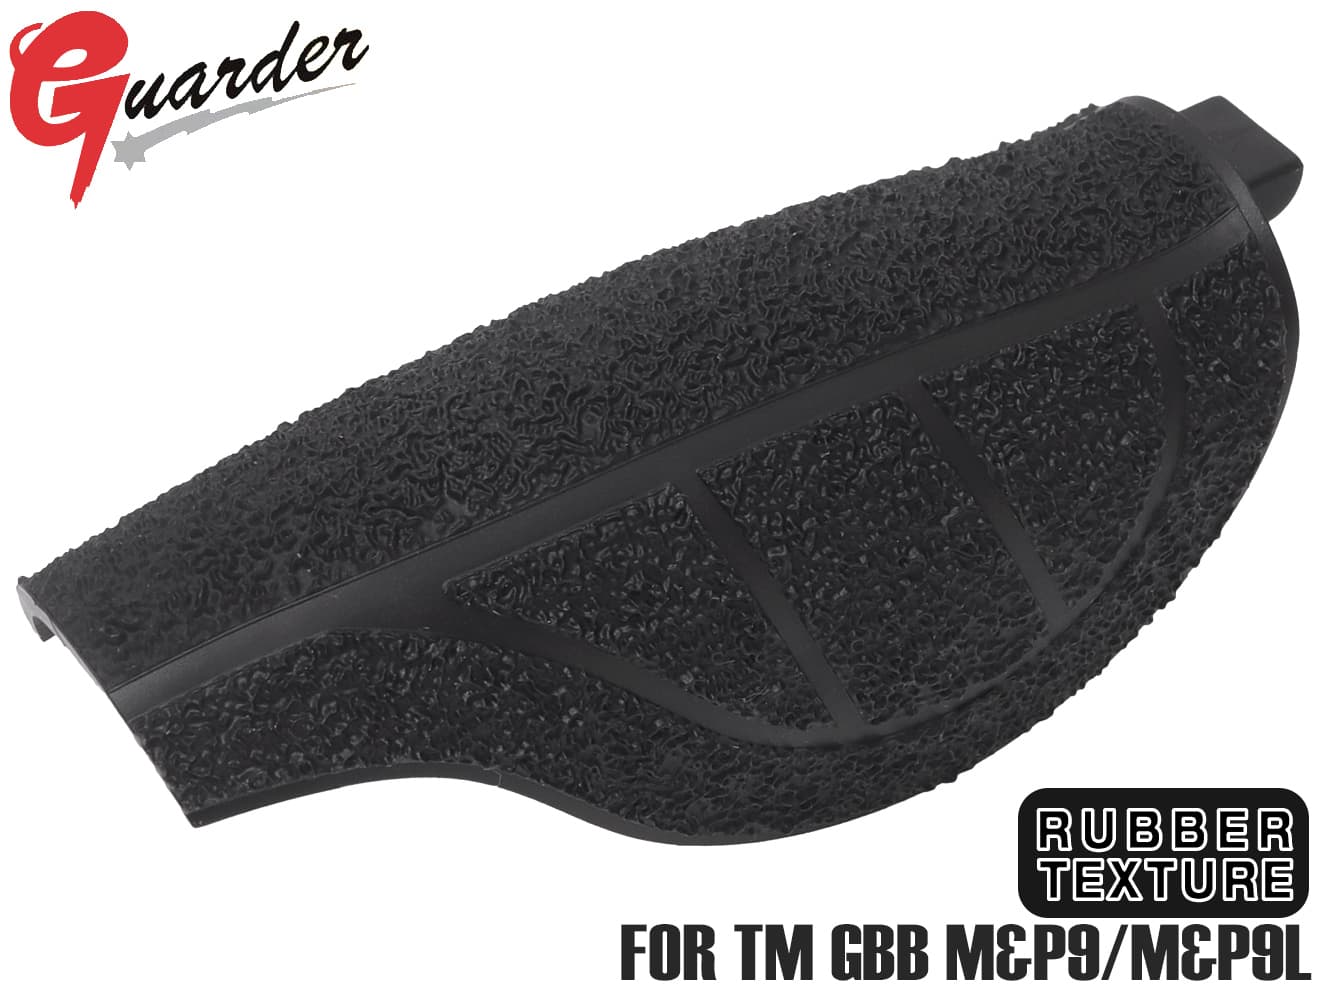 MP9-54 BK M GUARDER ミディアム バックストラップ PCタイプ for マルイ M&P9/M&P9L 東京マルイ MARUI GBB テクスチャ 硬質化 グリップ 強度 ラバー 耐久性